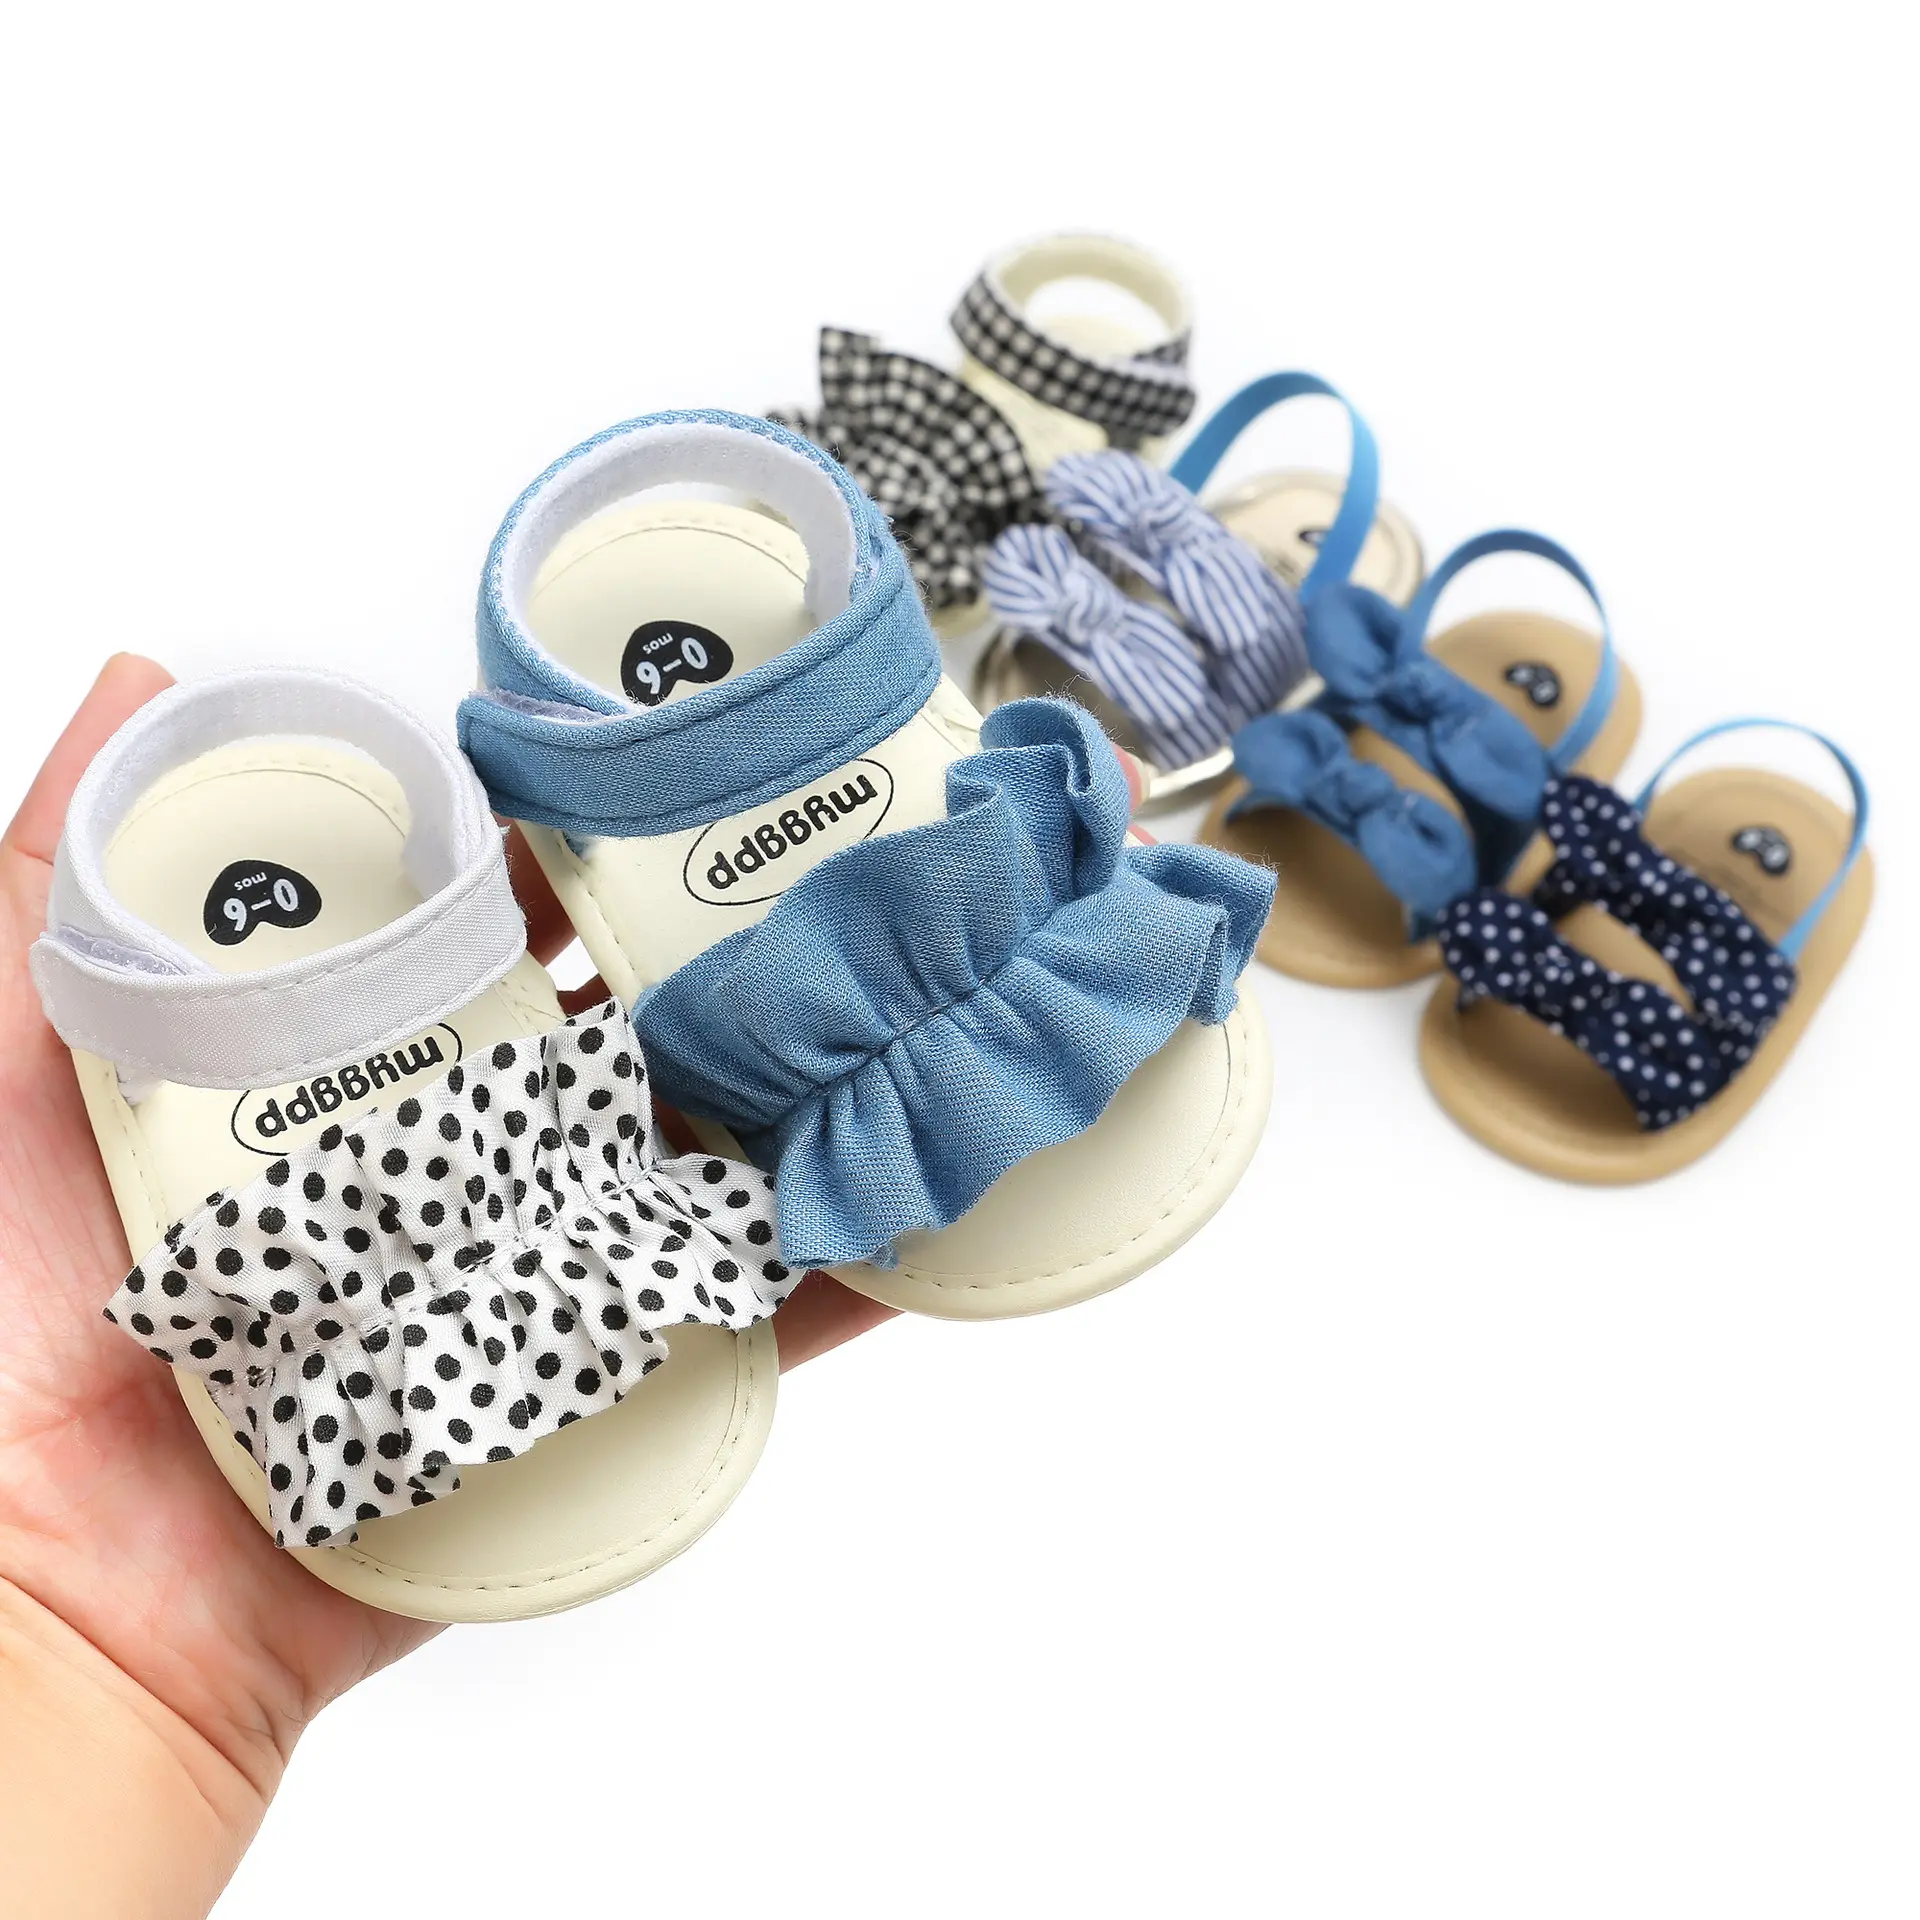 الانزلاق على الصلبة الأزياء الأخفاف أحذية لفصل الصيف حذاء طفل ل 0-24 أشهر